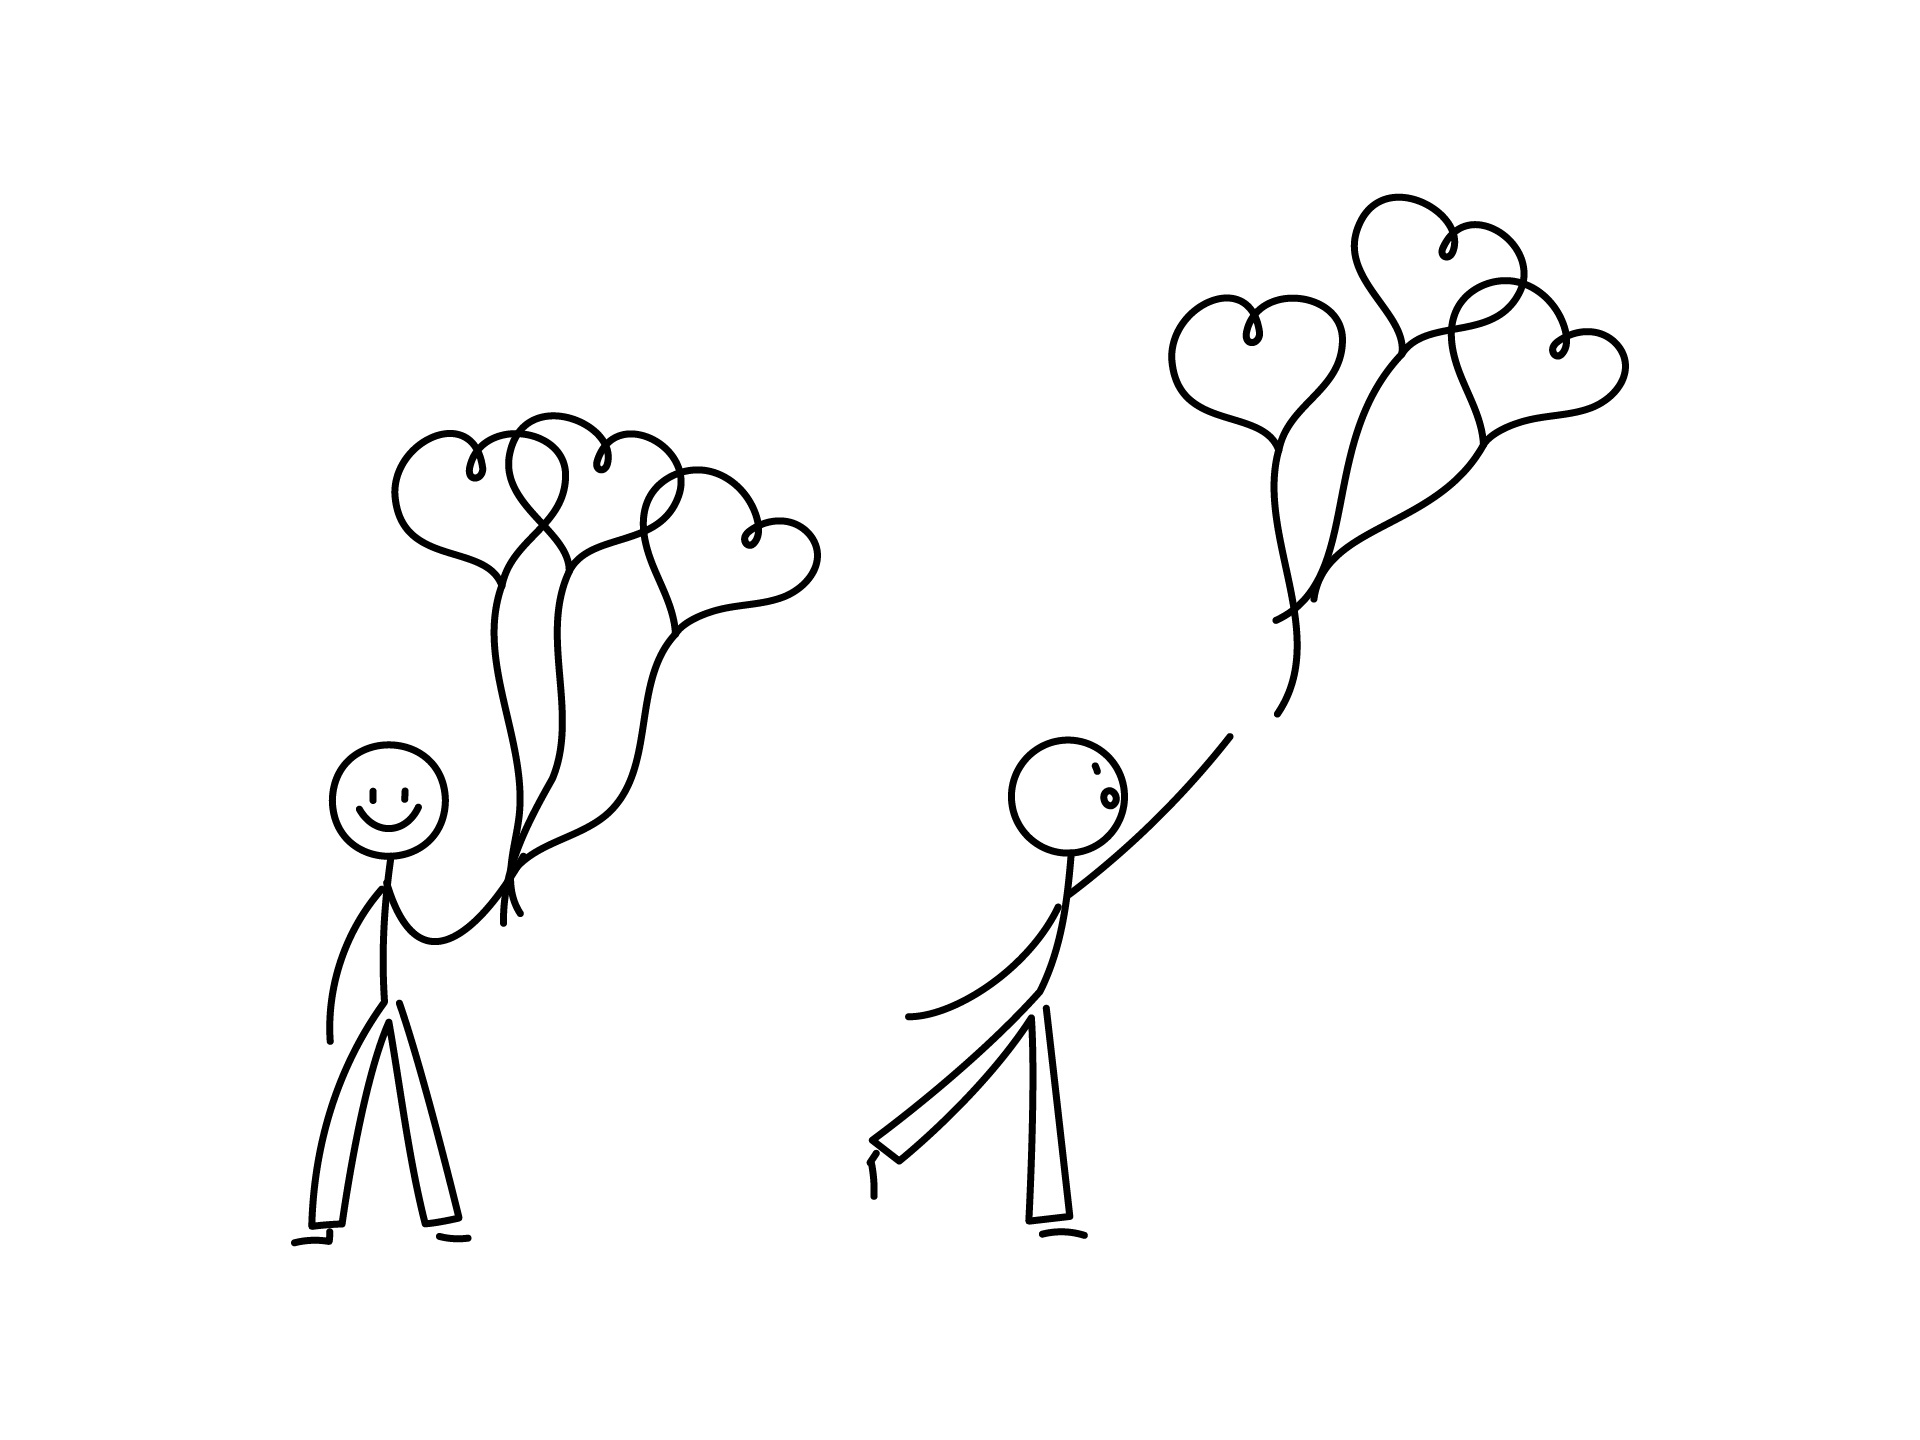 イラスト無料 シンプルな棒人間のイラストセット 複数のハートの風船を持つ イラストダウンロード